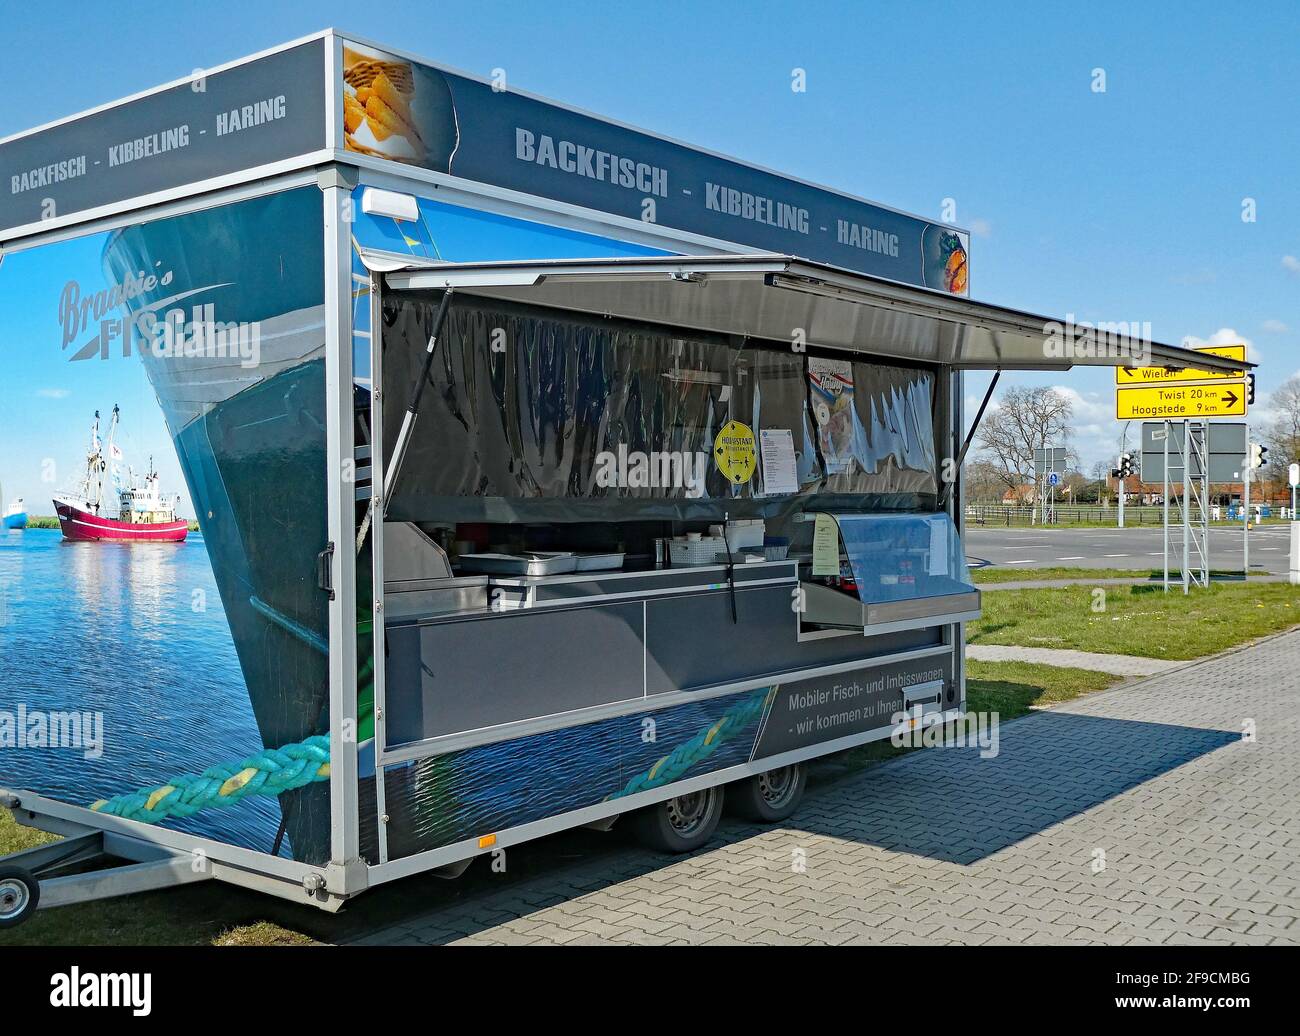 Wilsum, bassa Sassonia, Germania - aprile 17 2021 - il venditore olandese di pesce mobile vende pesce in Germania. Vengono venduti pesce fritto, patatine e aringhe. Foto Stock